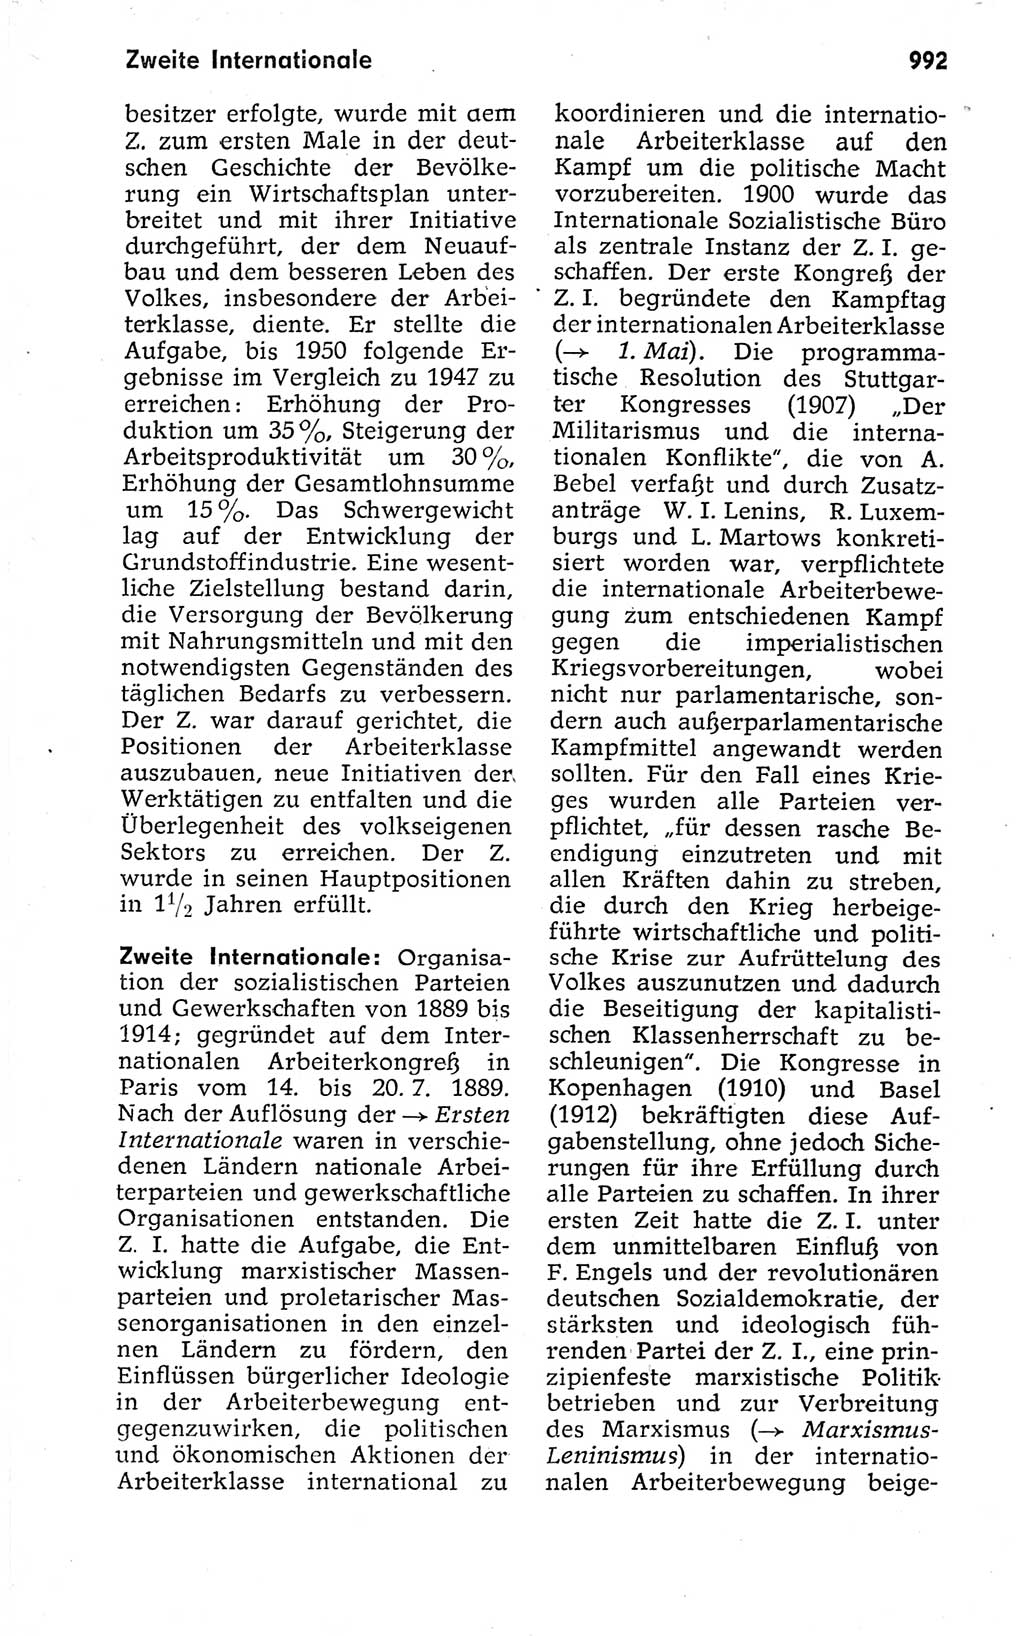 Kleines politisches Wörterbuch [Deutsche Demokratische Republik (DDR)] 1973, Seite 992 (Kl. pol. Wb. DDR 1973, S. 992)